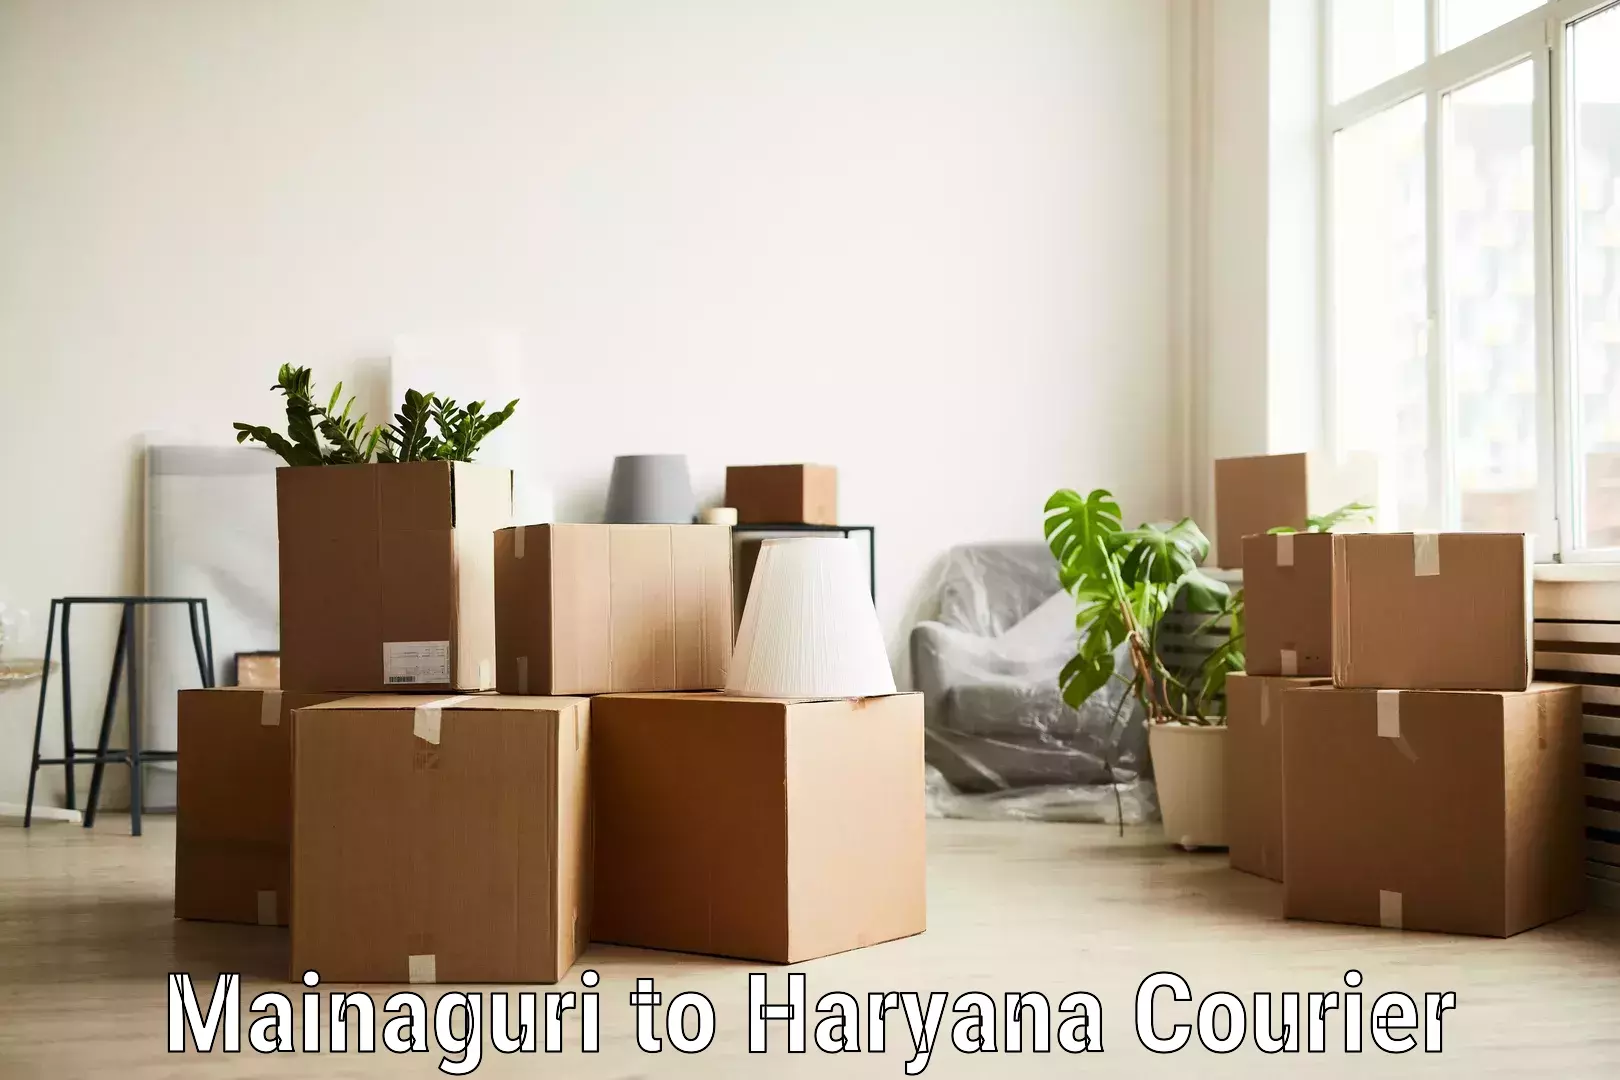 High-priority parcel service Mainaguri to NCR Haryana